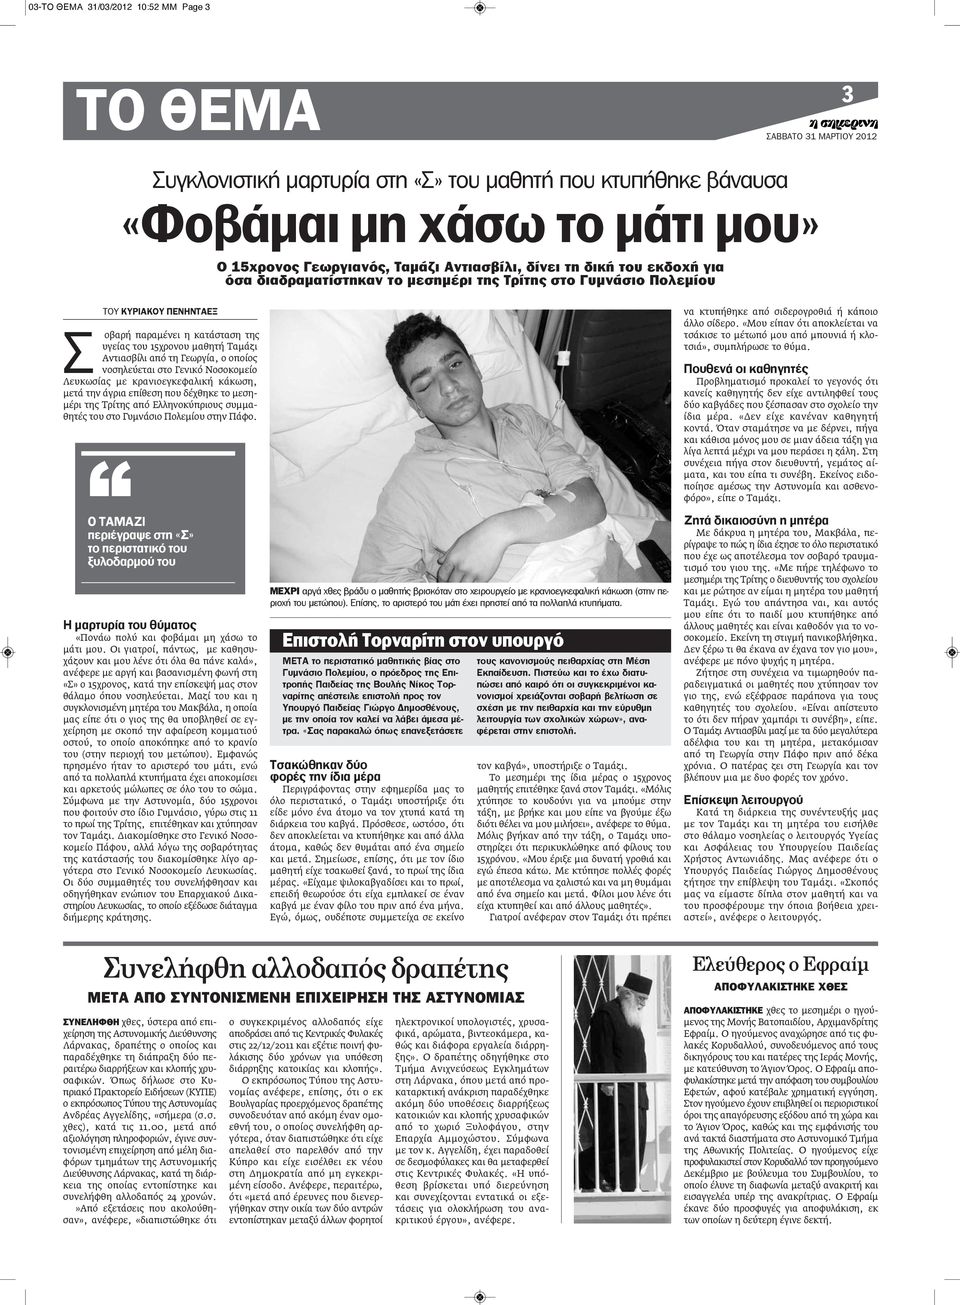 ο οποίος νοσηλεύεται στο Γενικό Νοσοκομείο Λευκωσίας με κρανιοεγκεφαλική κάκωση, μετά την άγρια επίθεση που δέχθηκε το μεσημέρι της Τρίτης από Ελληνοκύπριους συμμαθητές του στο Γυμνάσιο Πολεμίου στην